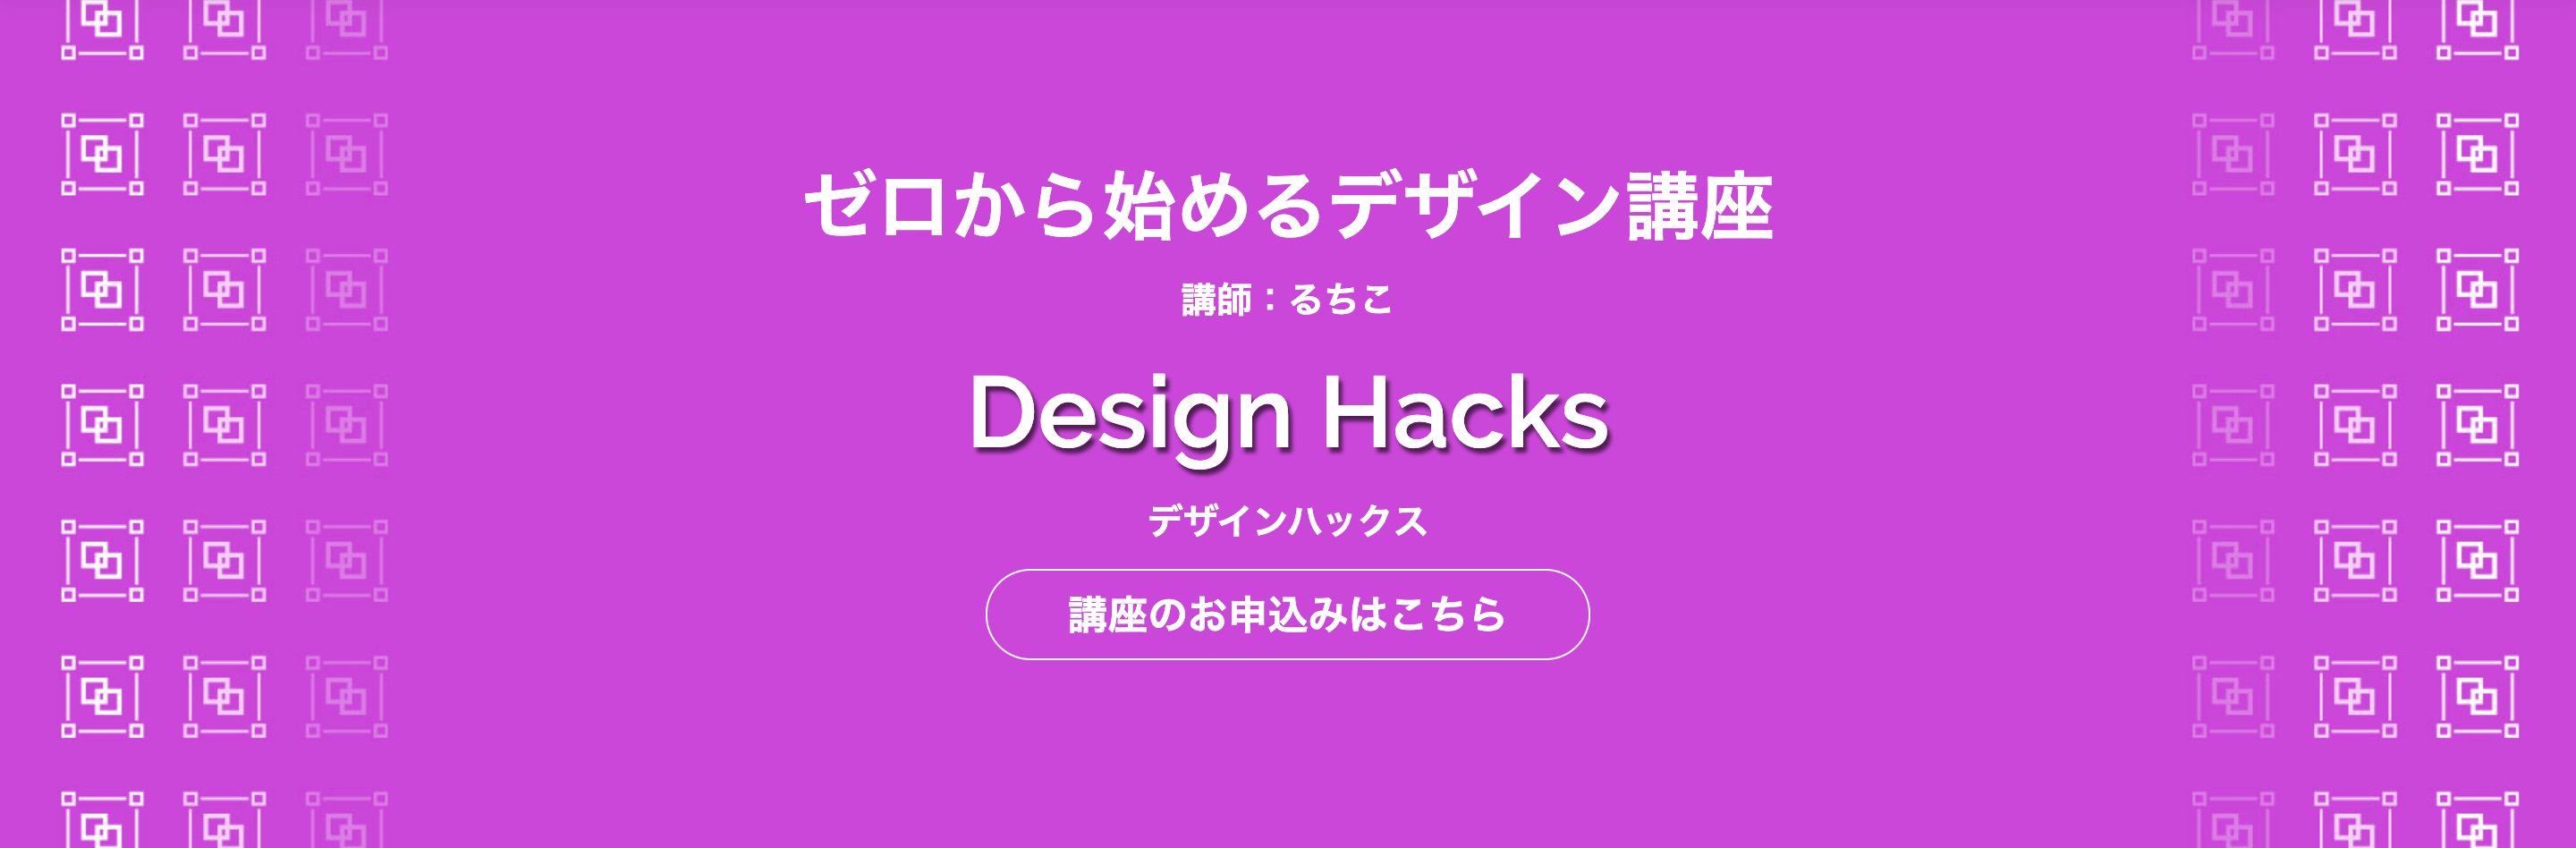 DesignHacks